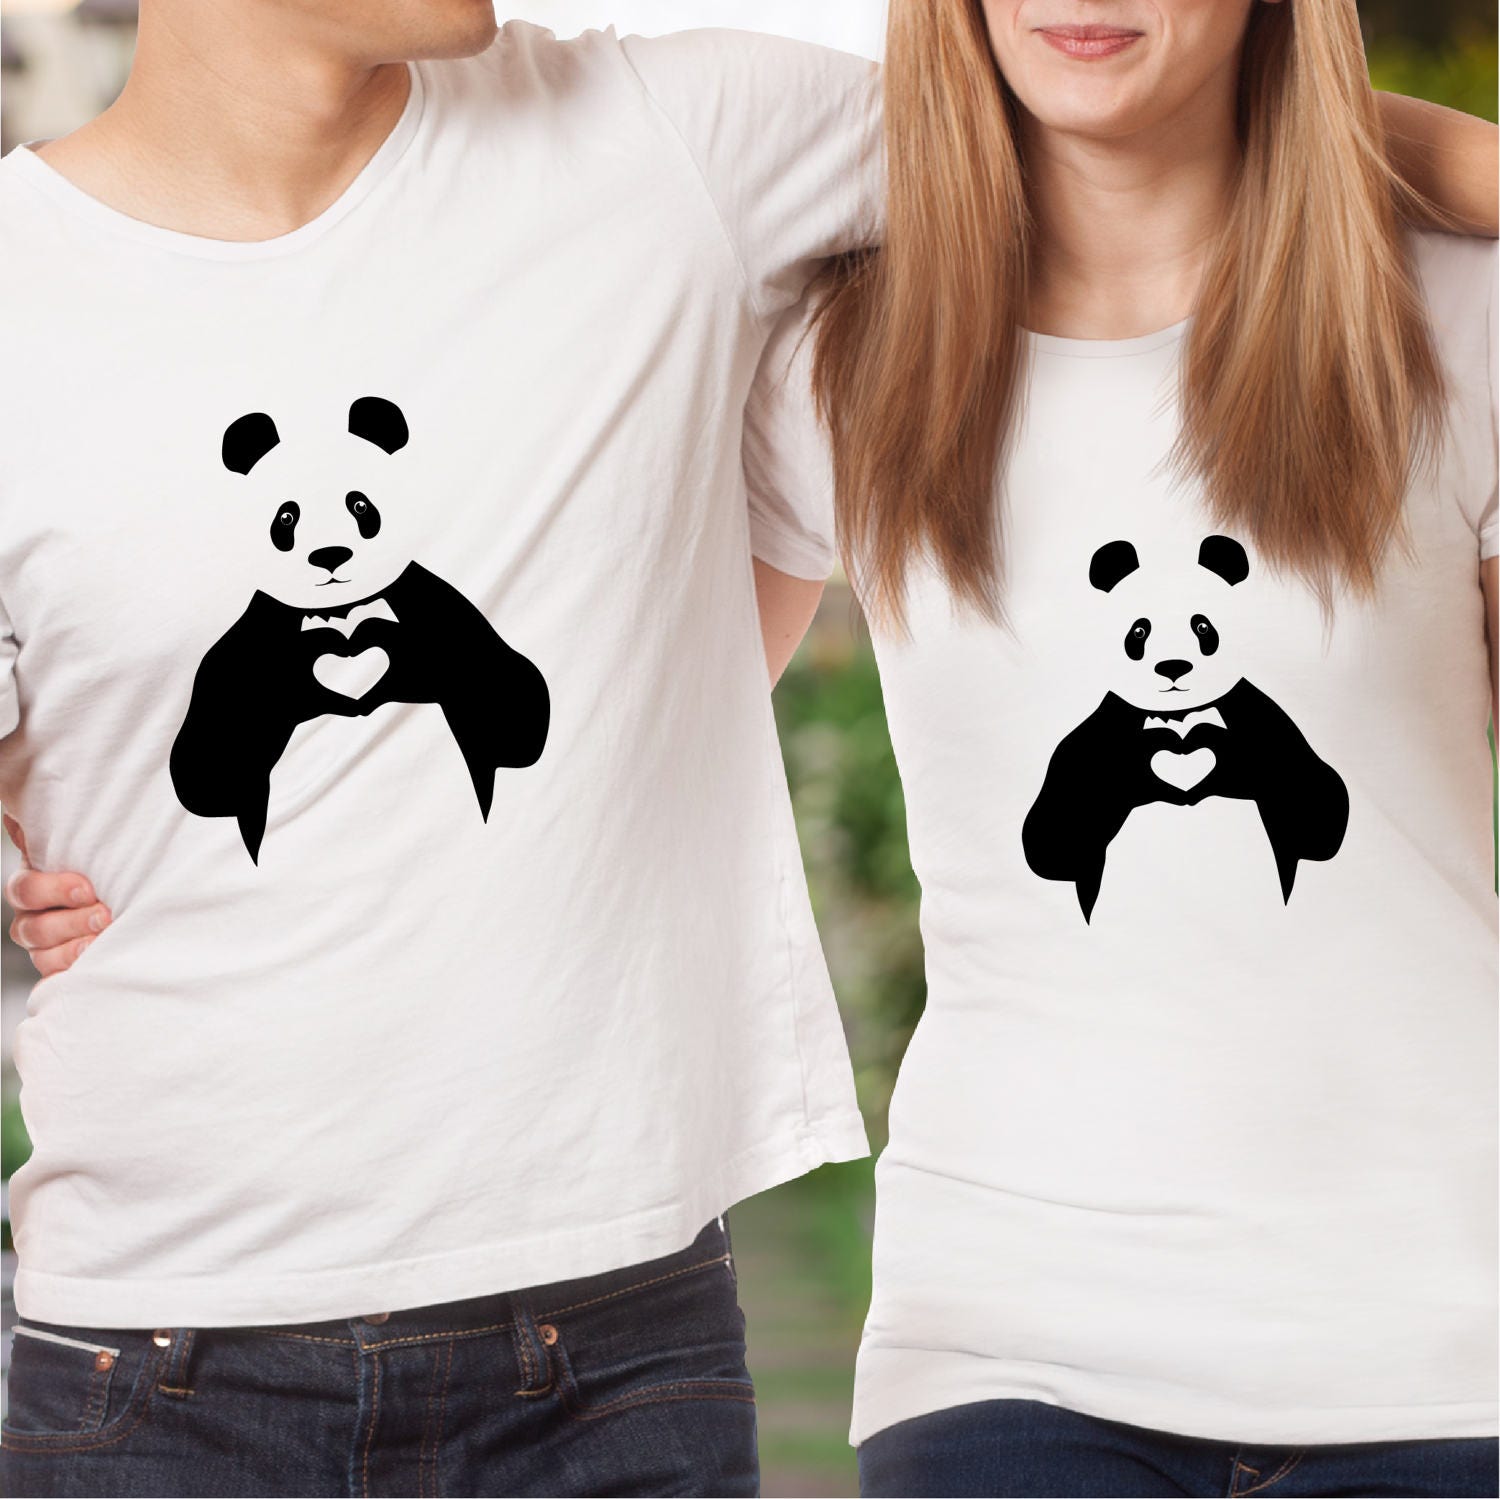 Couple shirts / pärchen t-shirts / panda shirt / matching